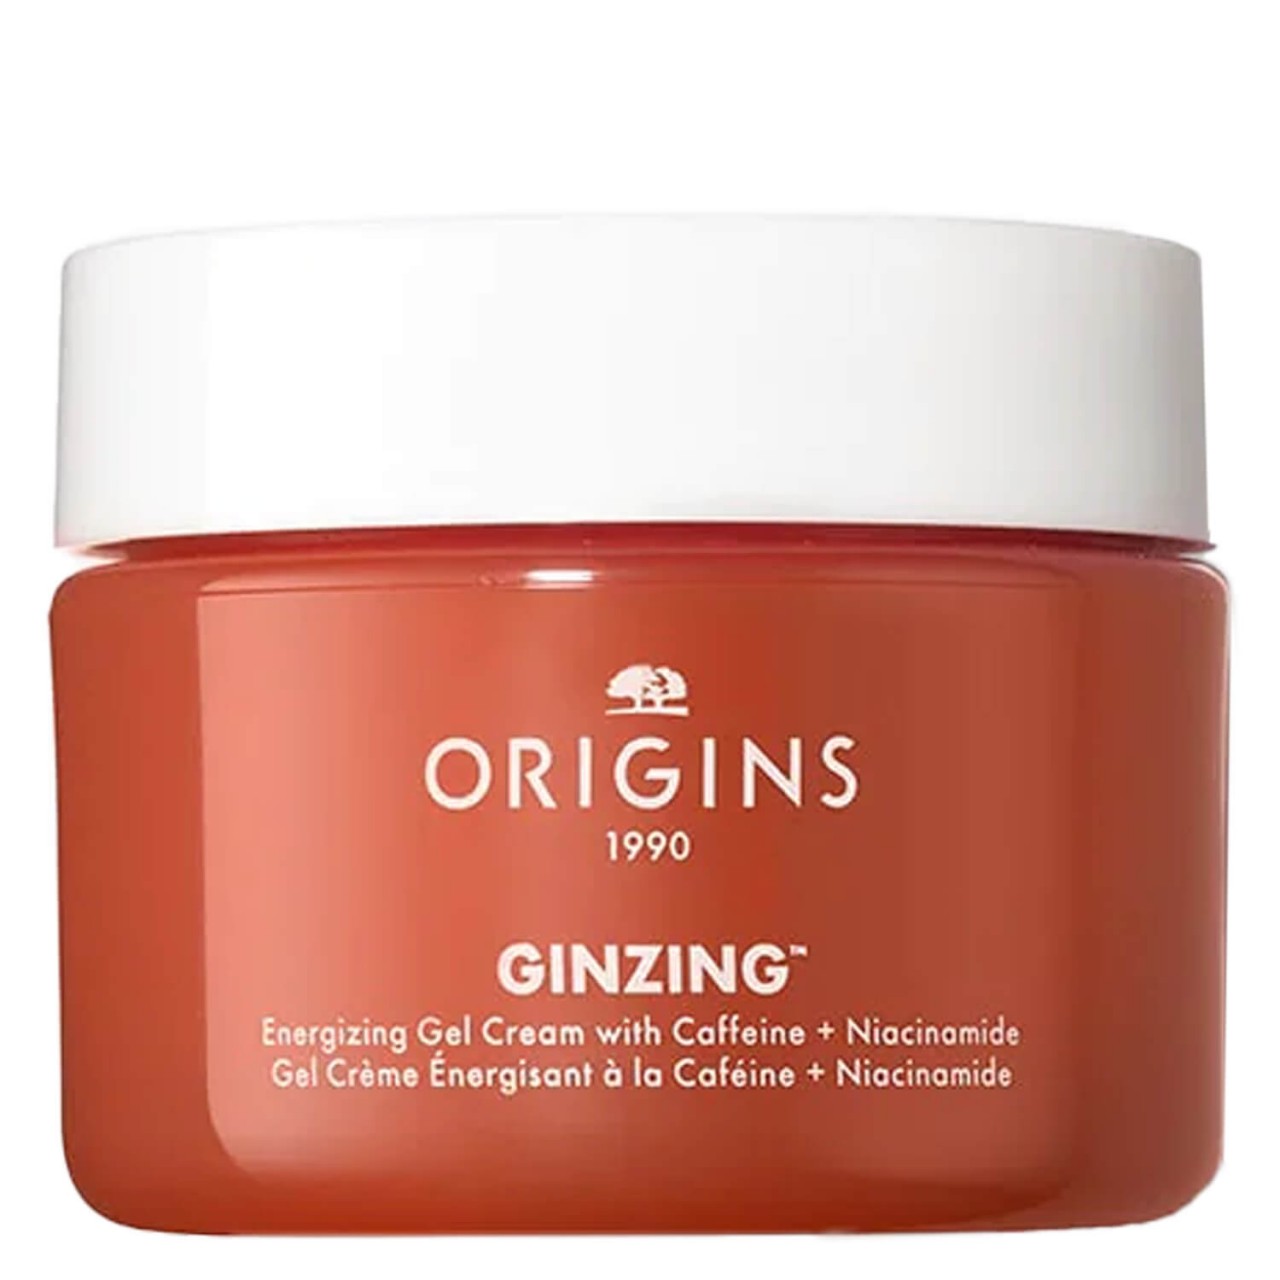 Origins GinZing - Energizing Gel Cream with Caffeine + Niacinamide von Origins